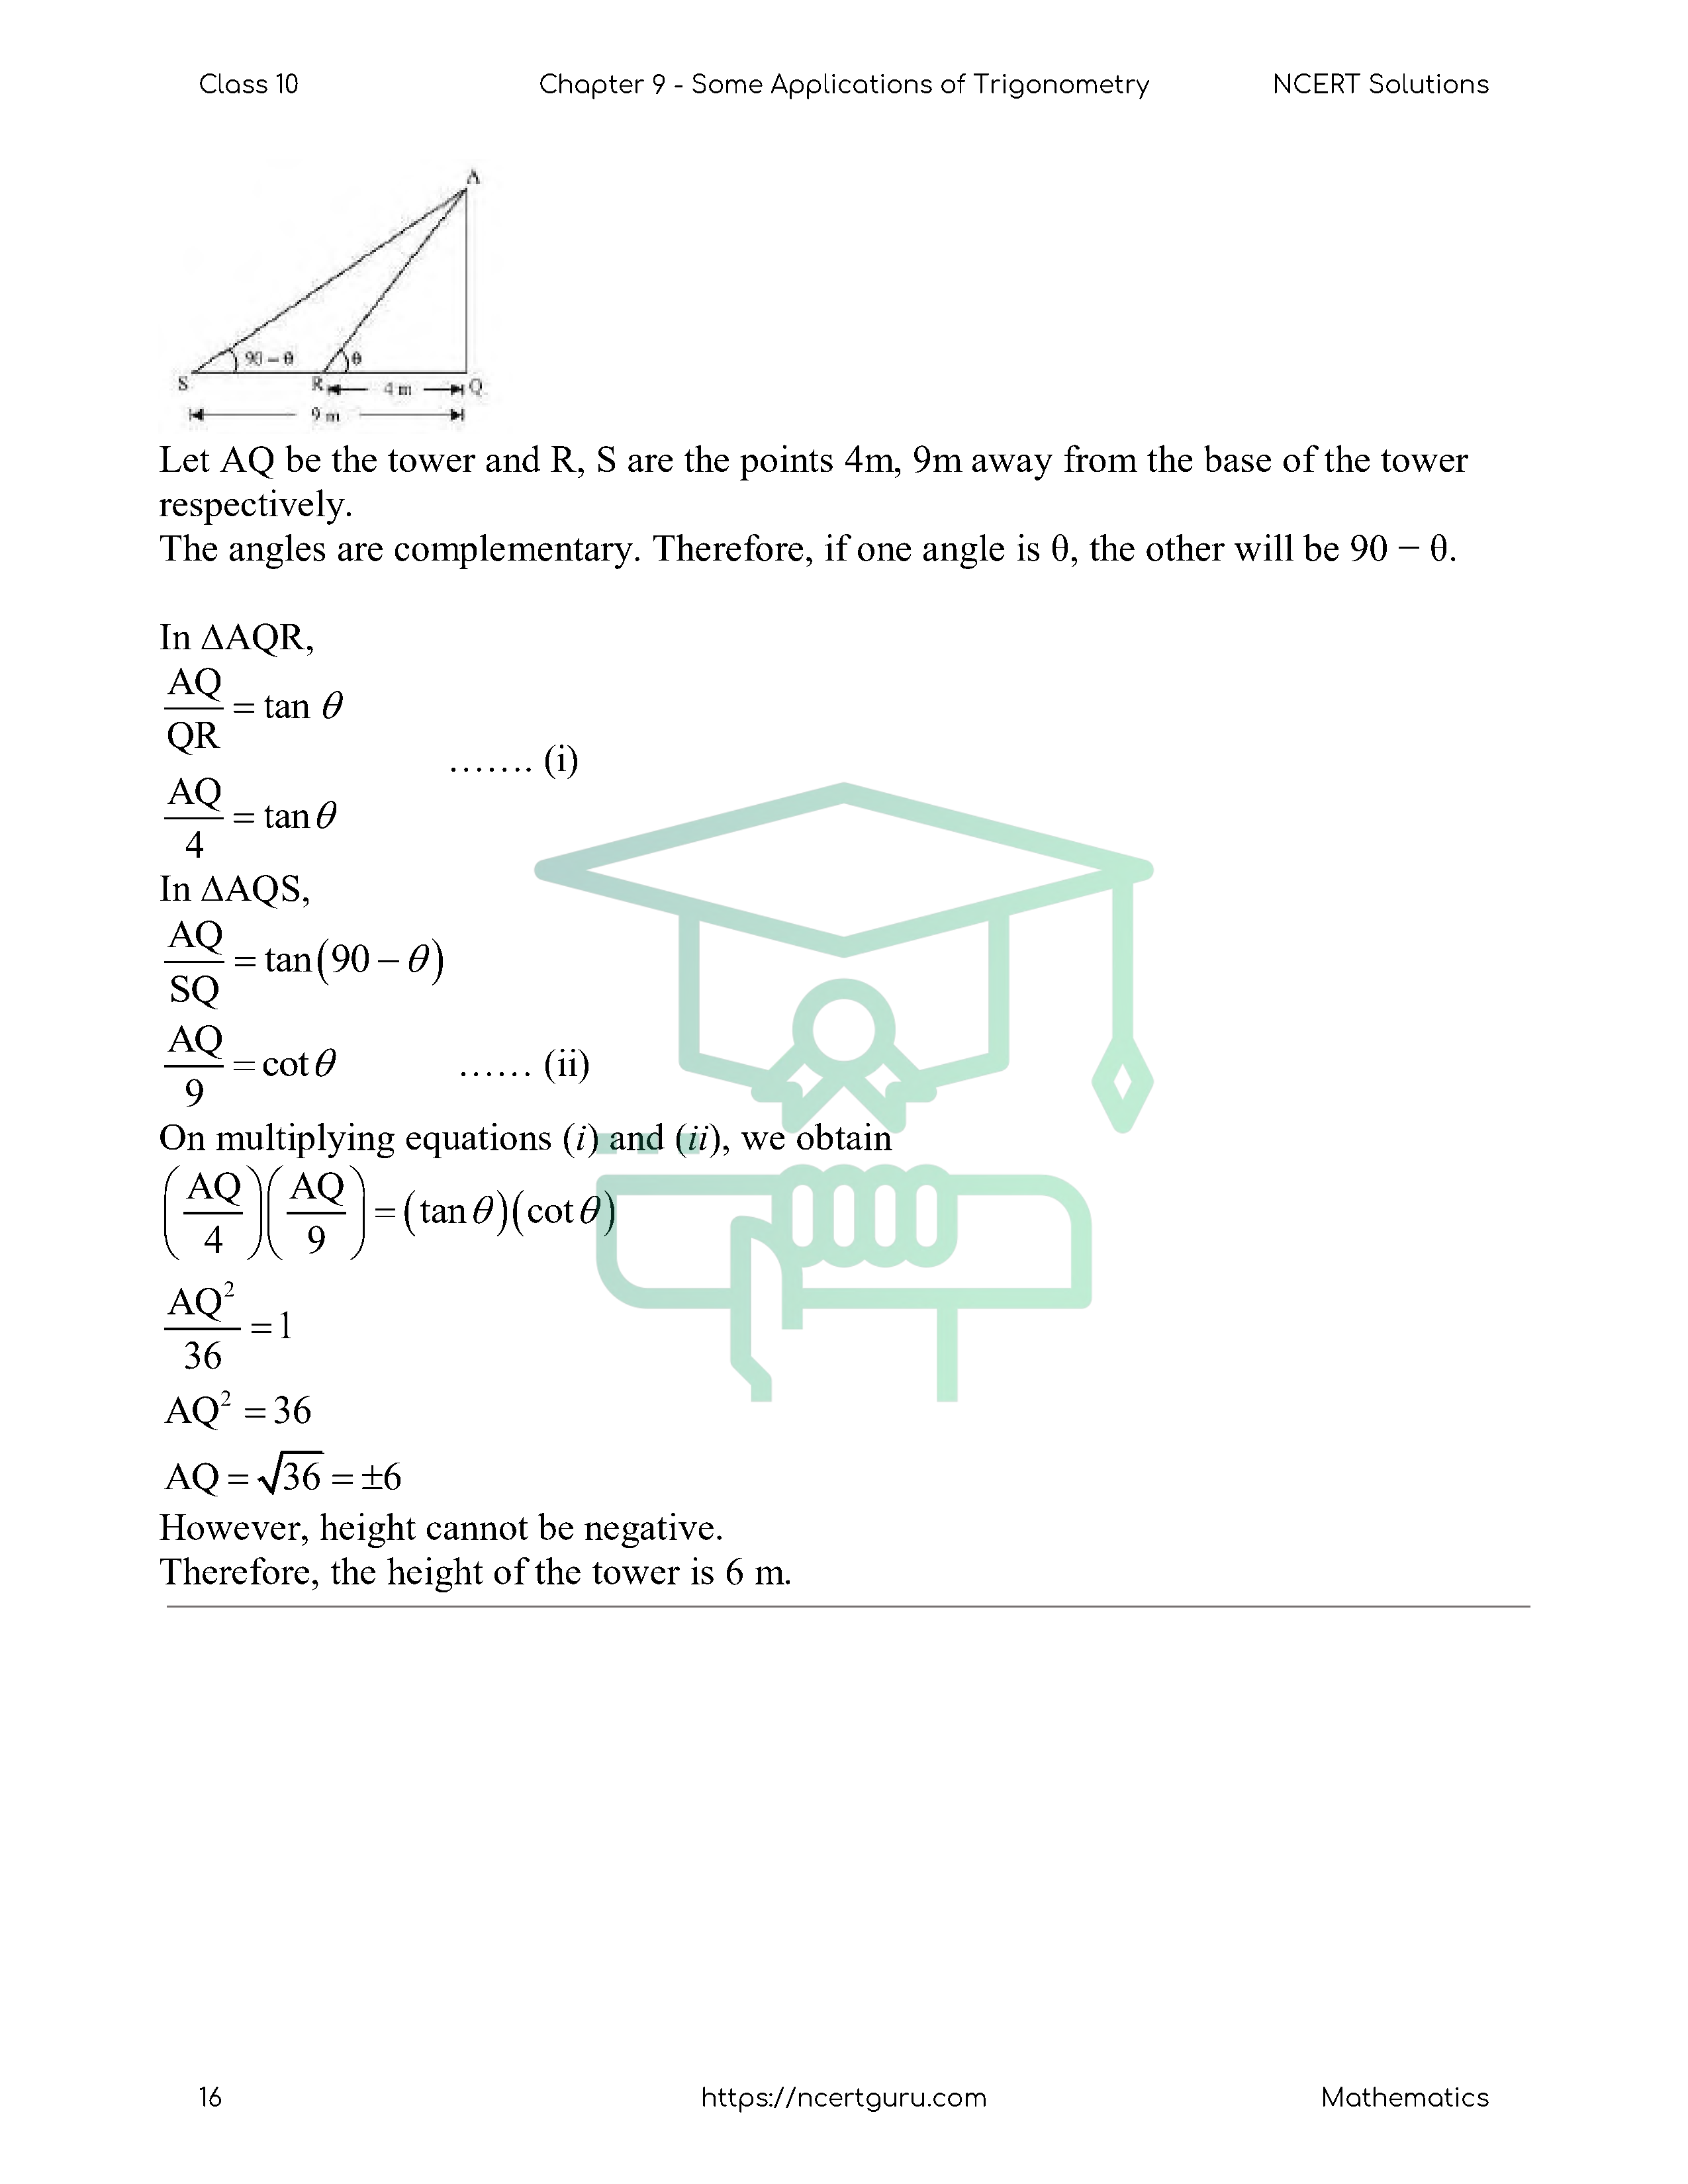 NCERT Solutions for Class 10 Maths Chapter 9